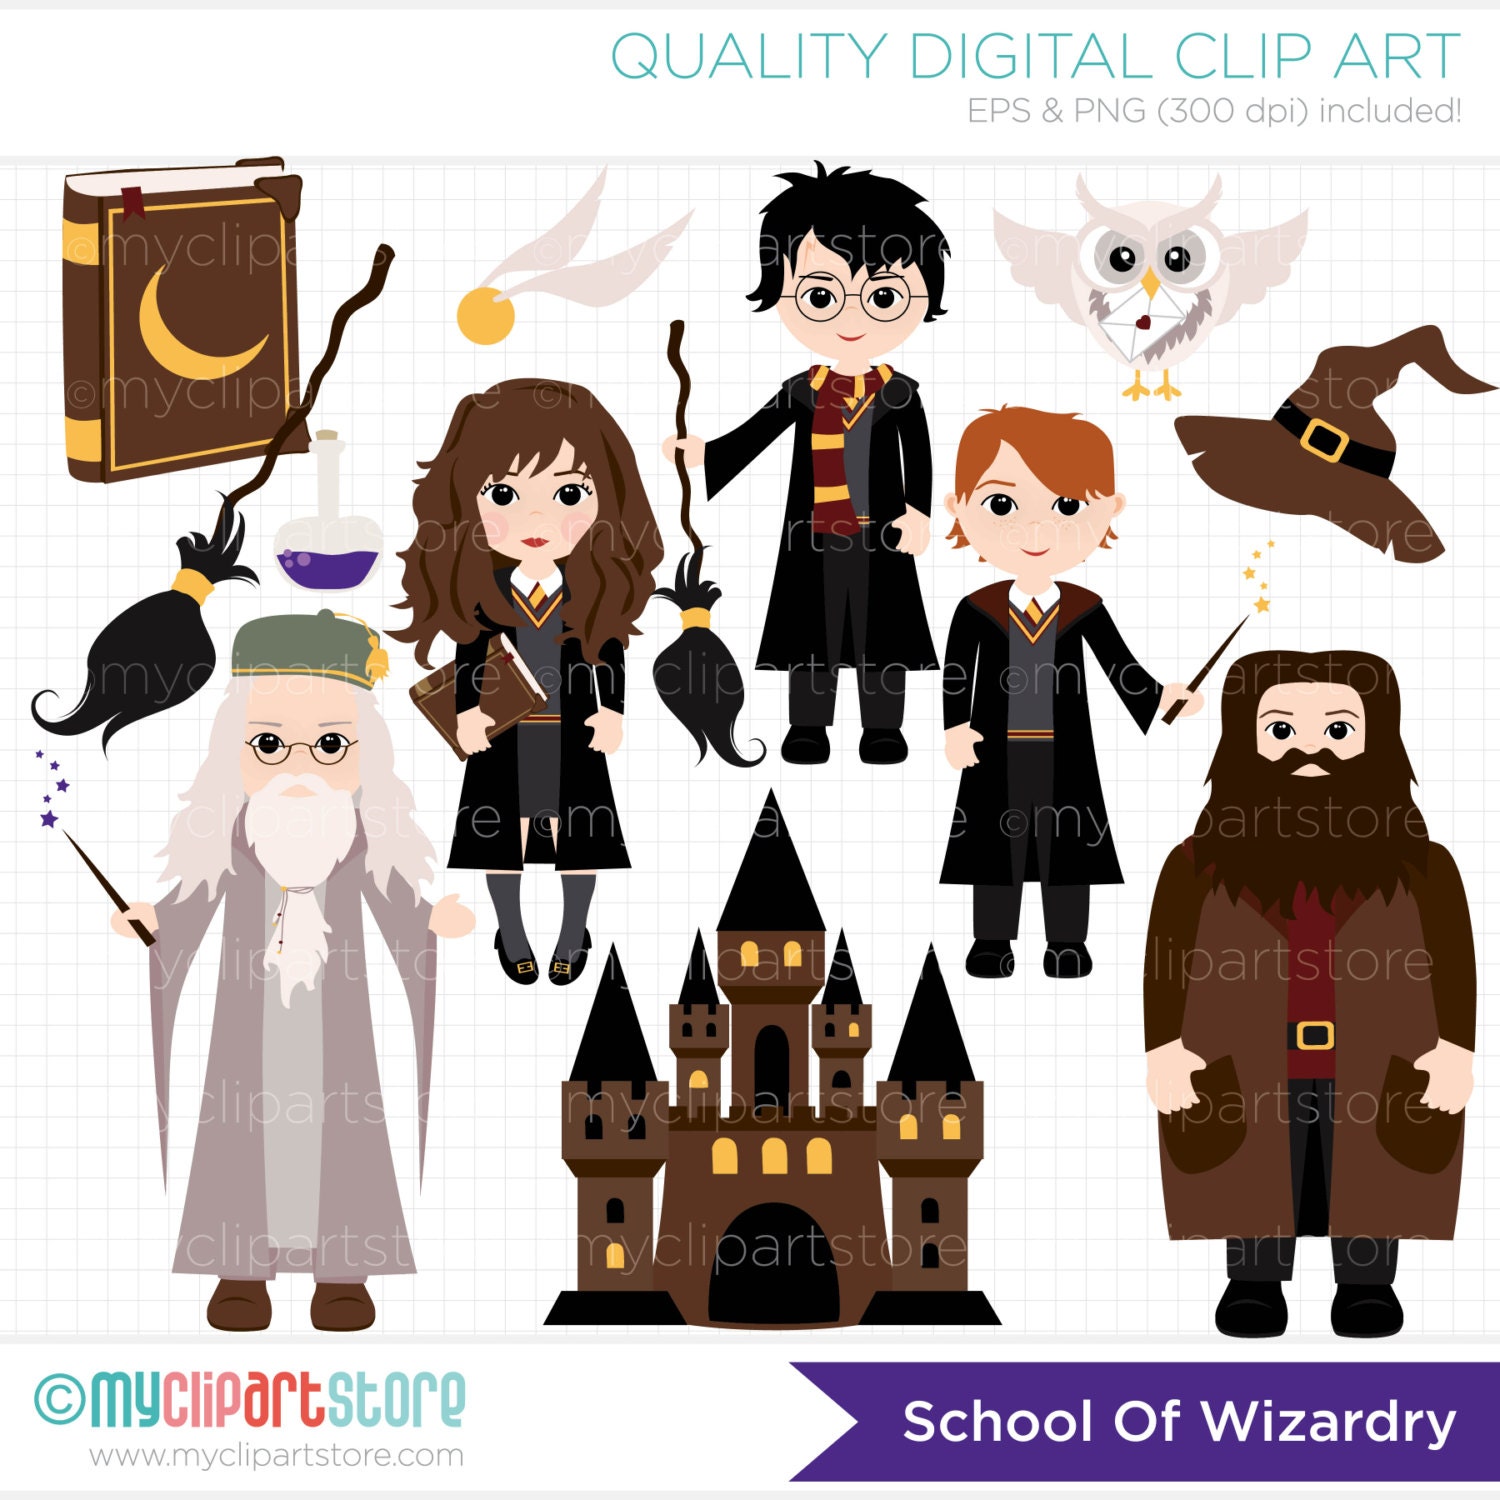 Download Clipart - School of Wizardry / Wizards clipart, Griffendor ...